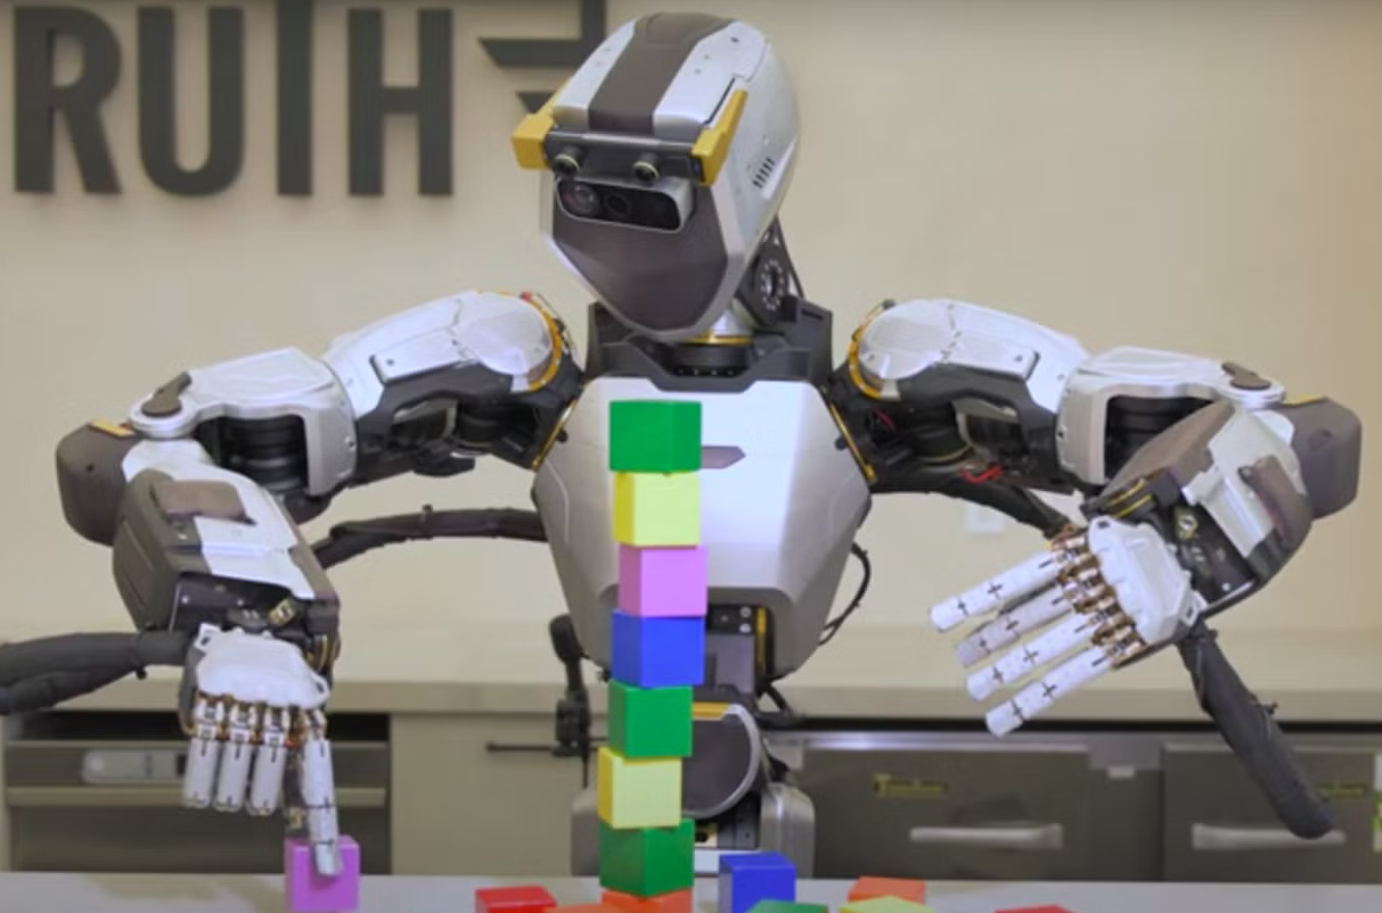 روبوت شبيه بالبشر من صنع شركة "سانكتشويري إي آي" يستعرض مهارات حركية تماثل ما لدى الإنسان 